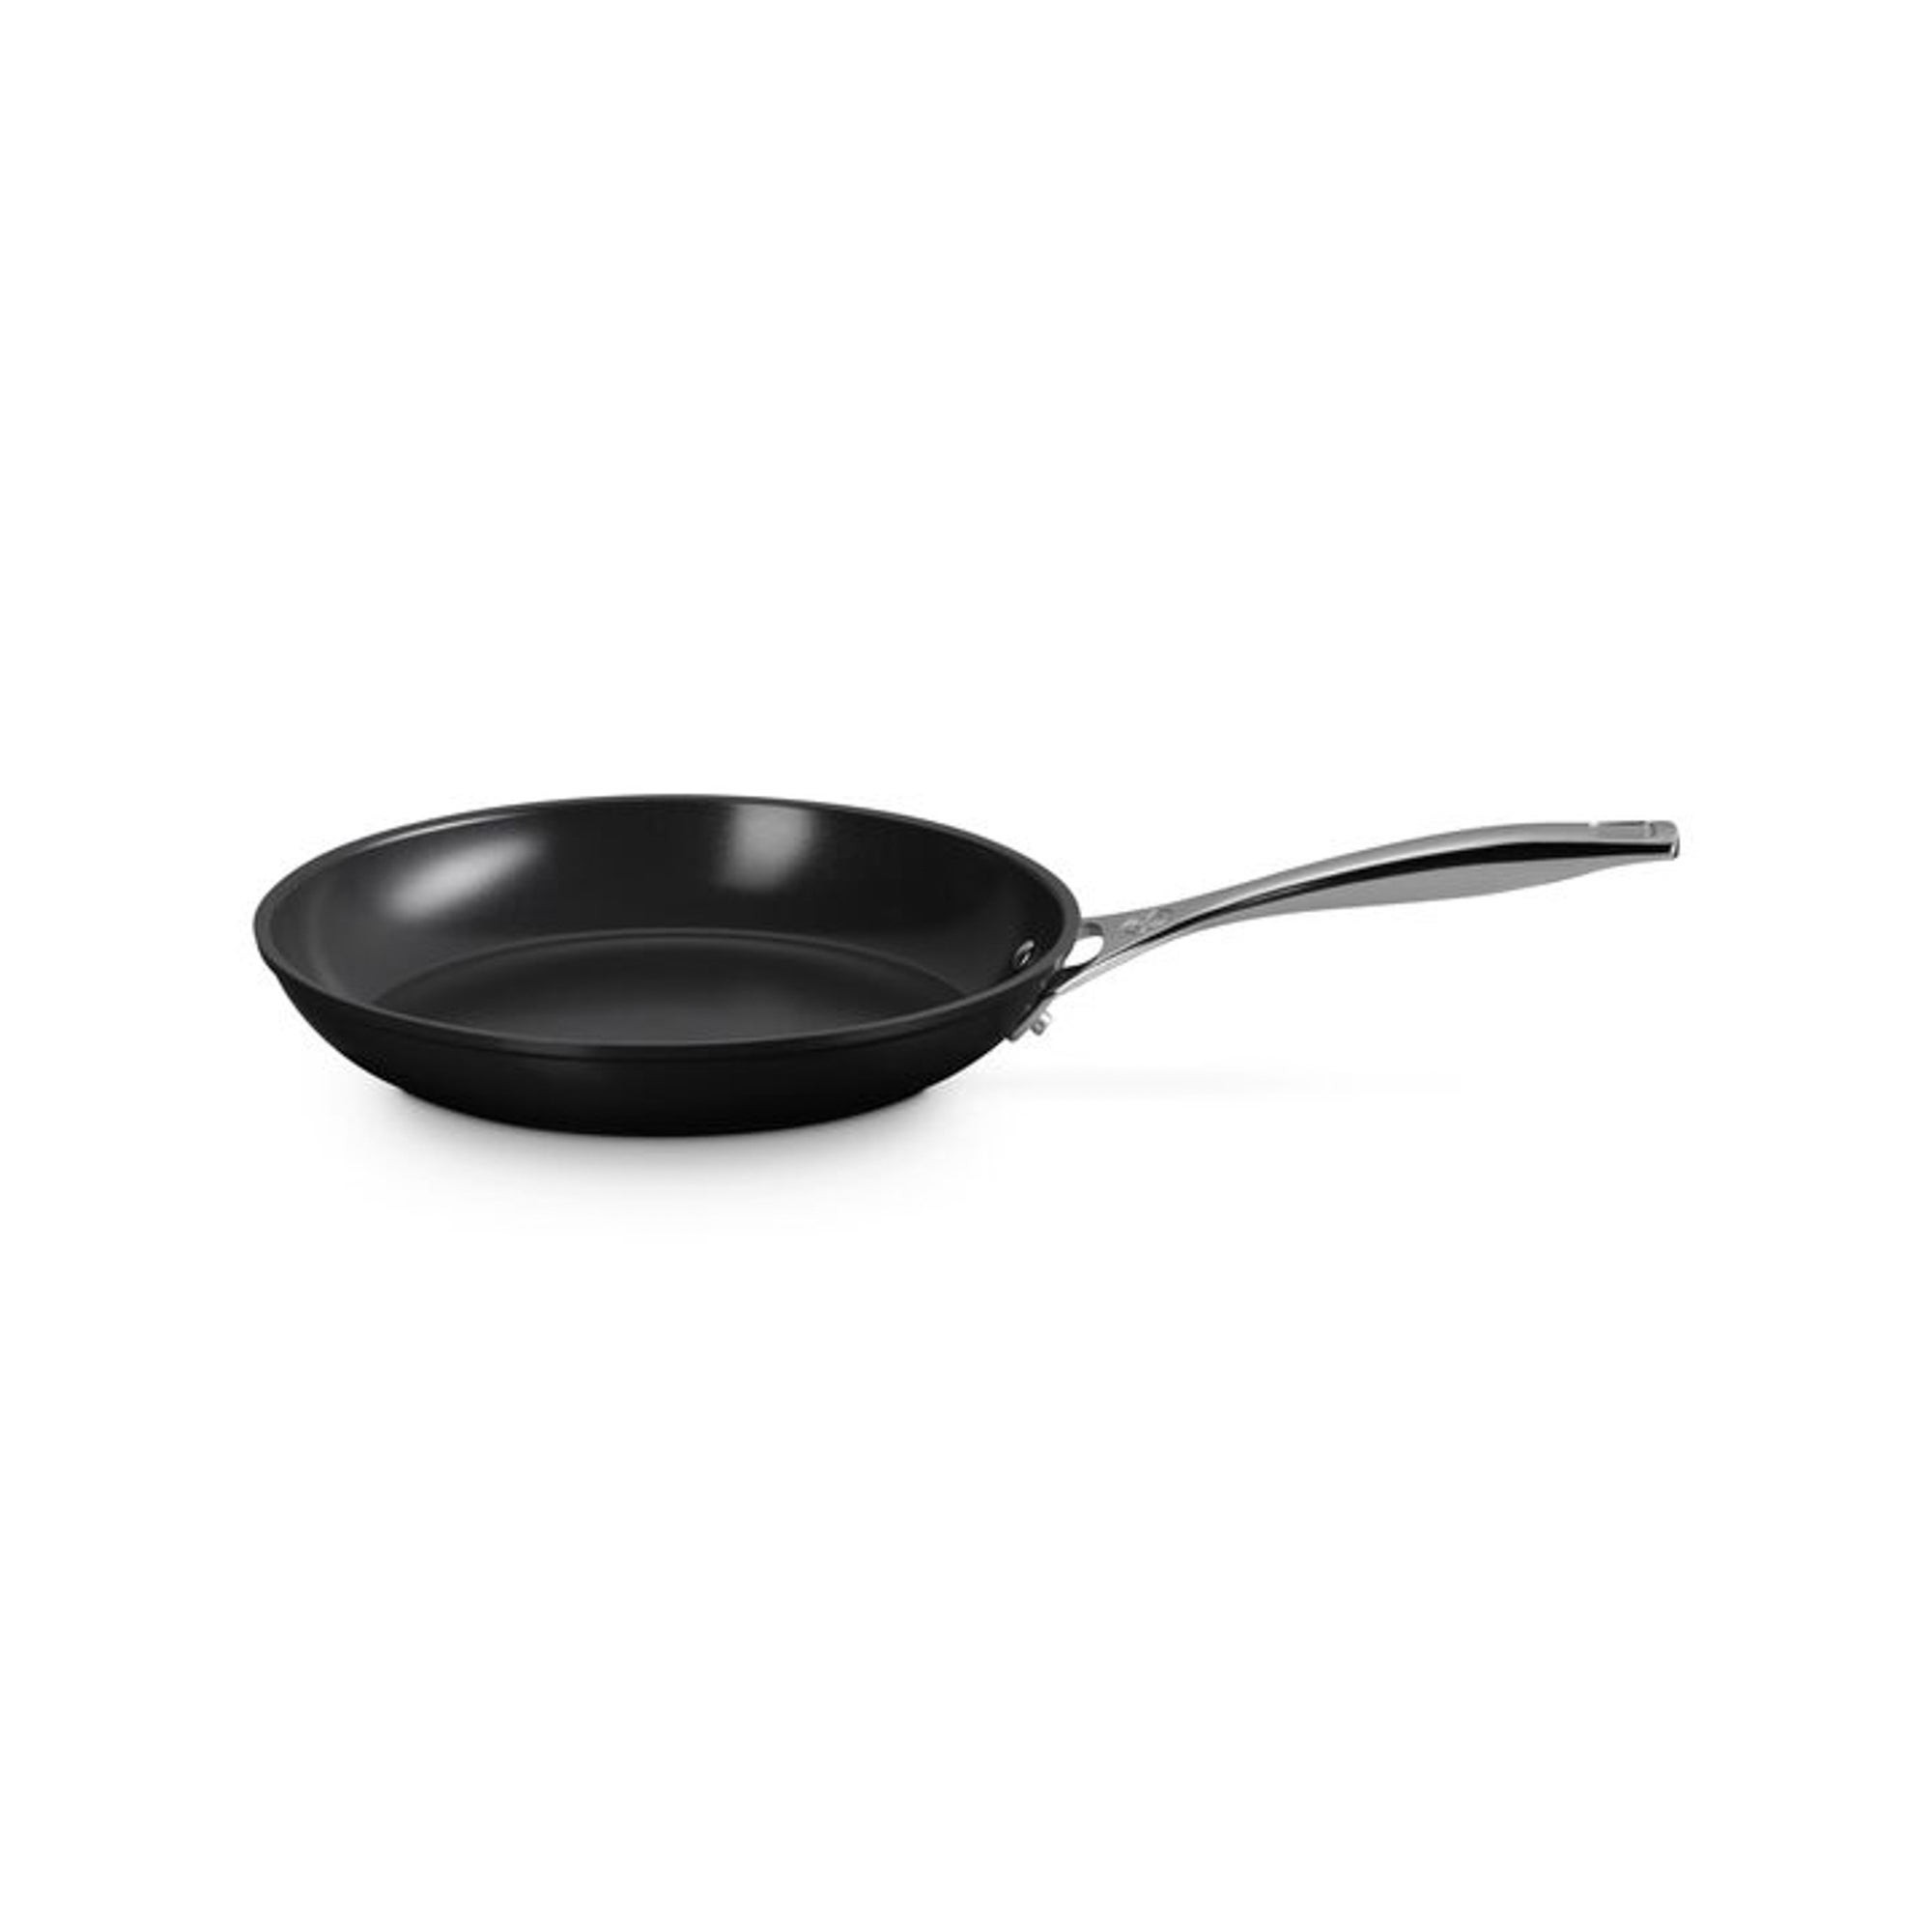 10" Essential Nonstick Ceramic Fry Pan